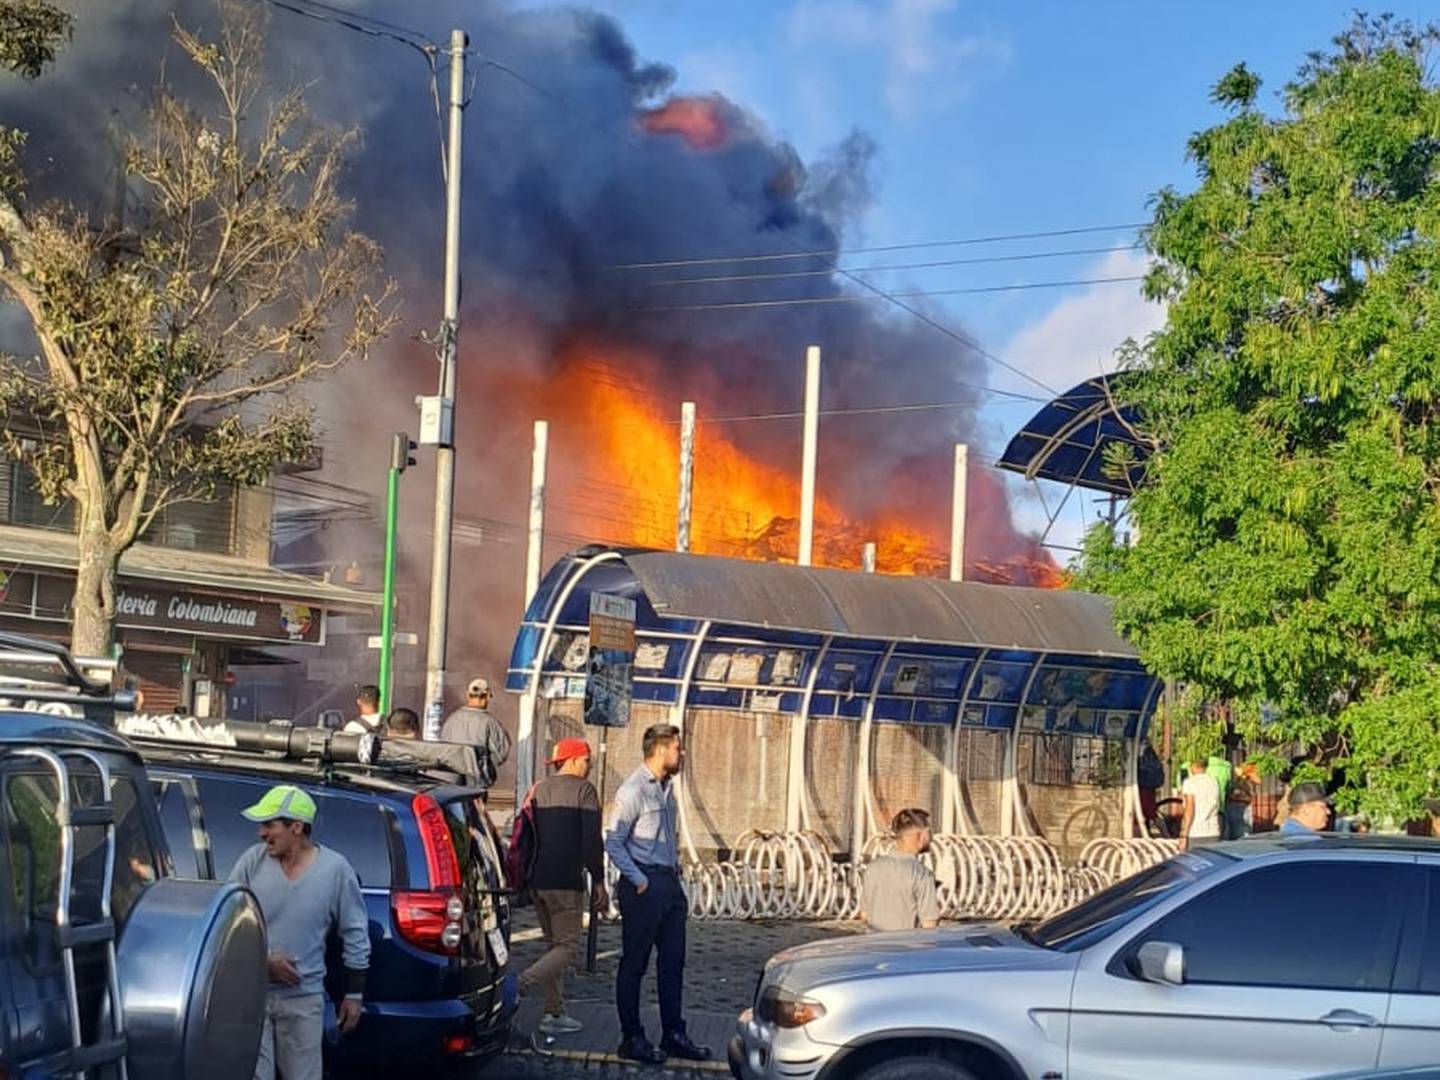 El incendio tendría lugar en lo que sería un antiguo hotel en el centro de Cartago. Foto cortesía.